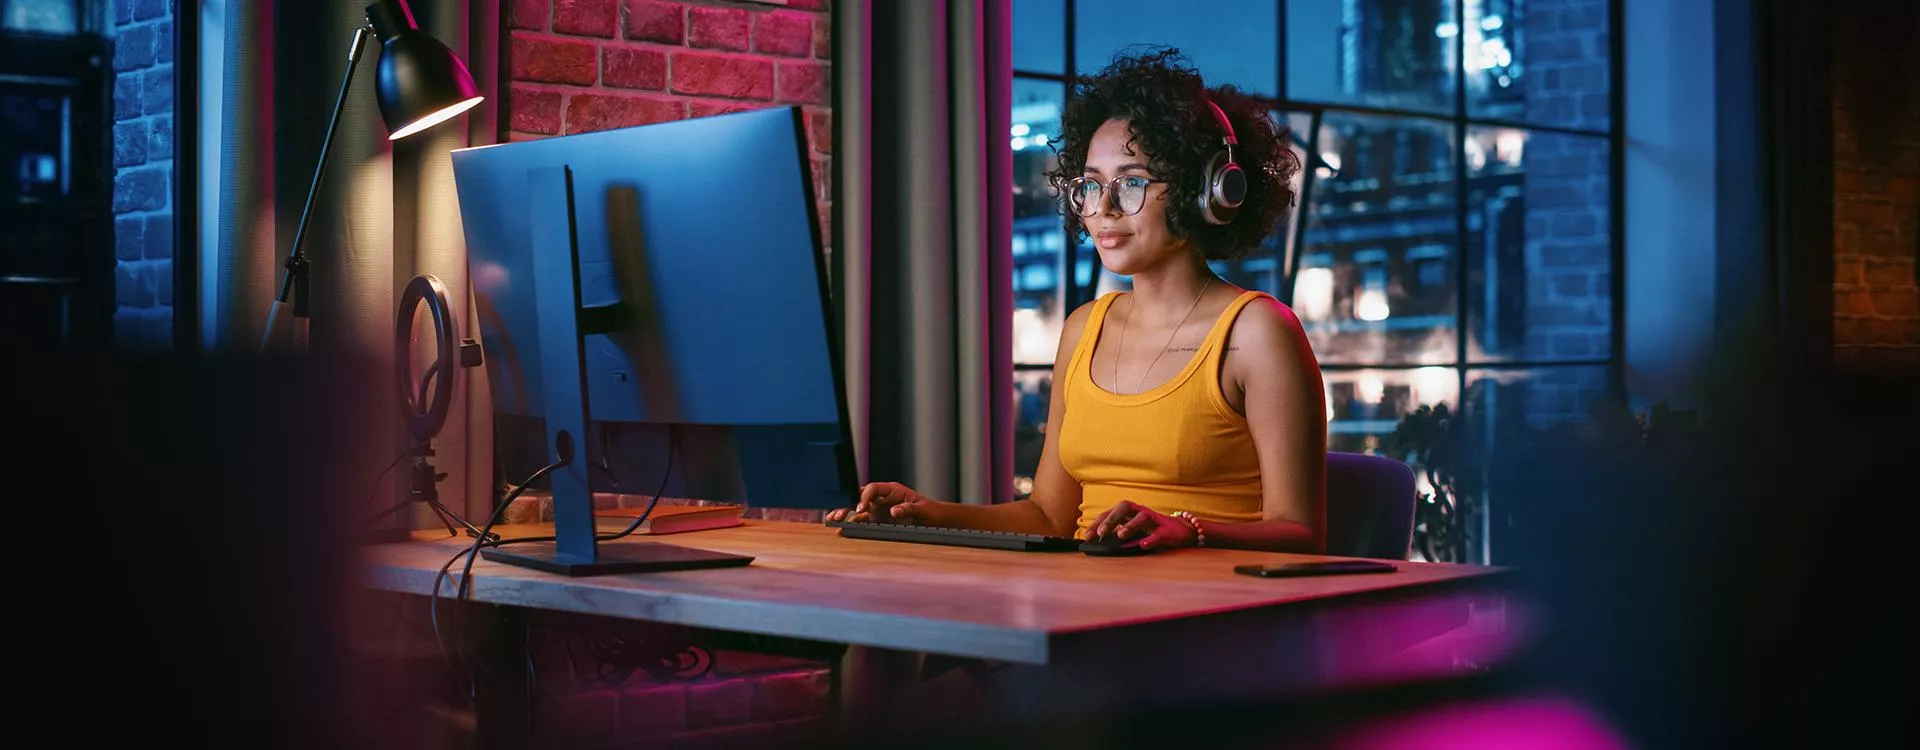 Jeune femme qui travaille sur son ordinateur